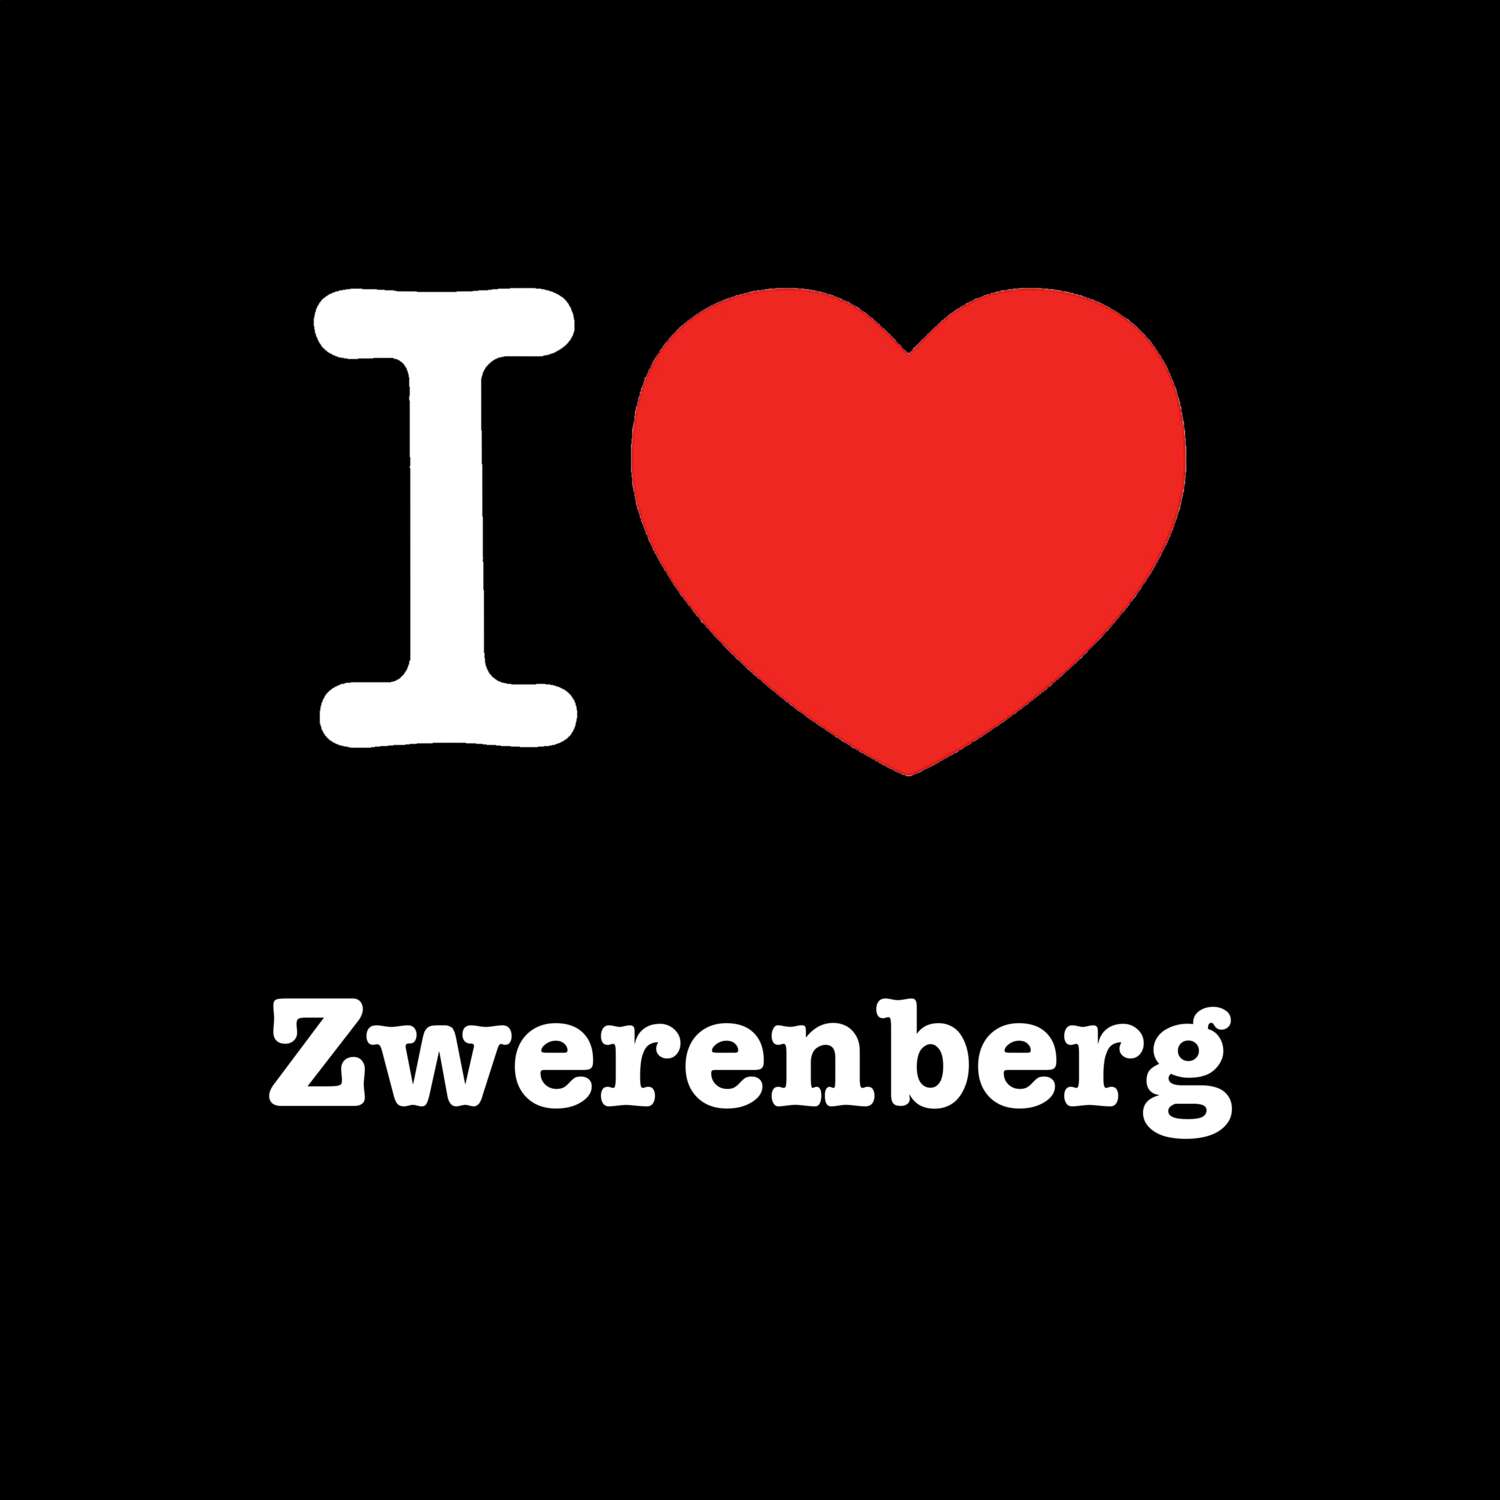 Zwerenberg T-Shirt »I love«